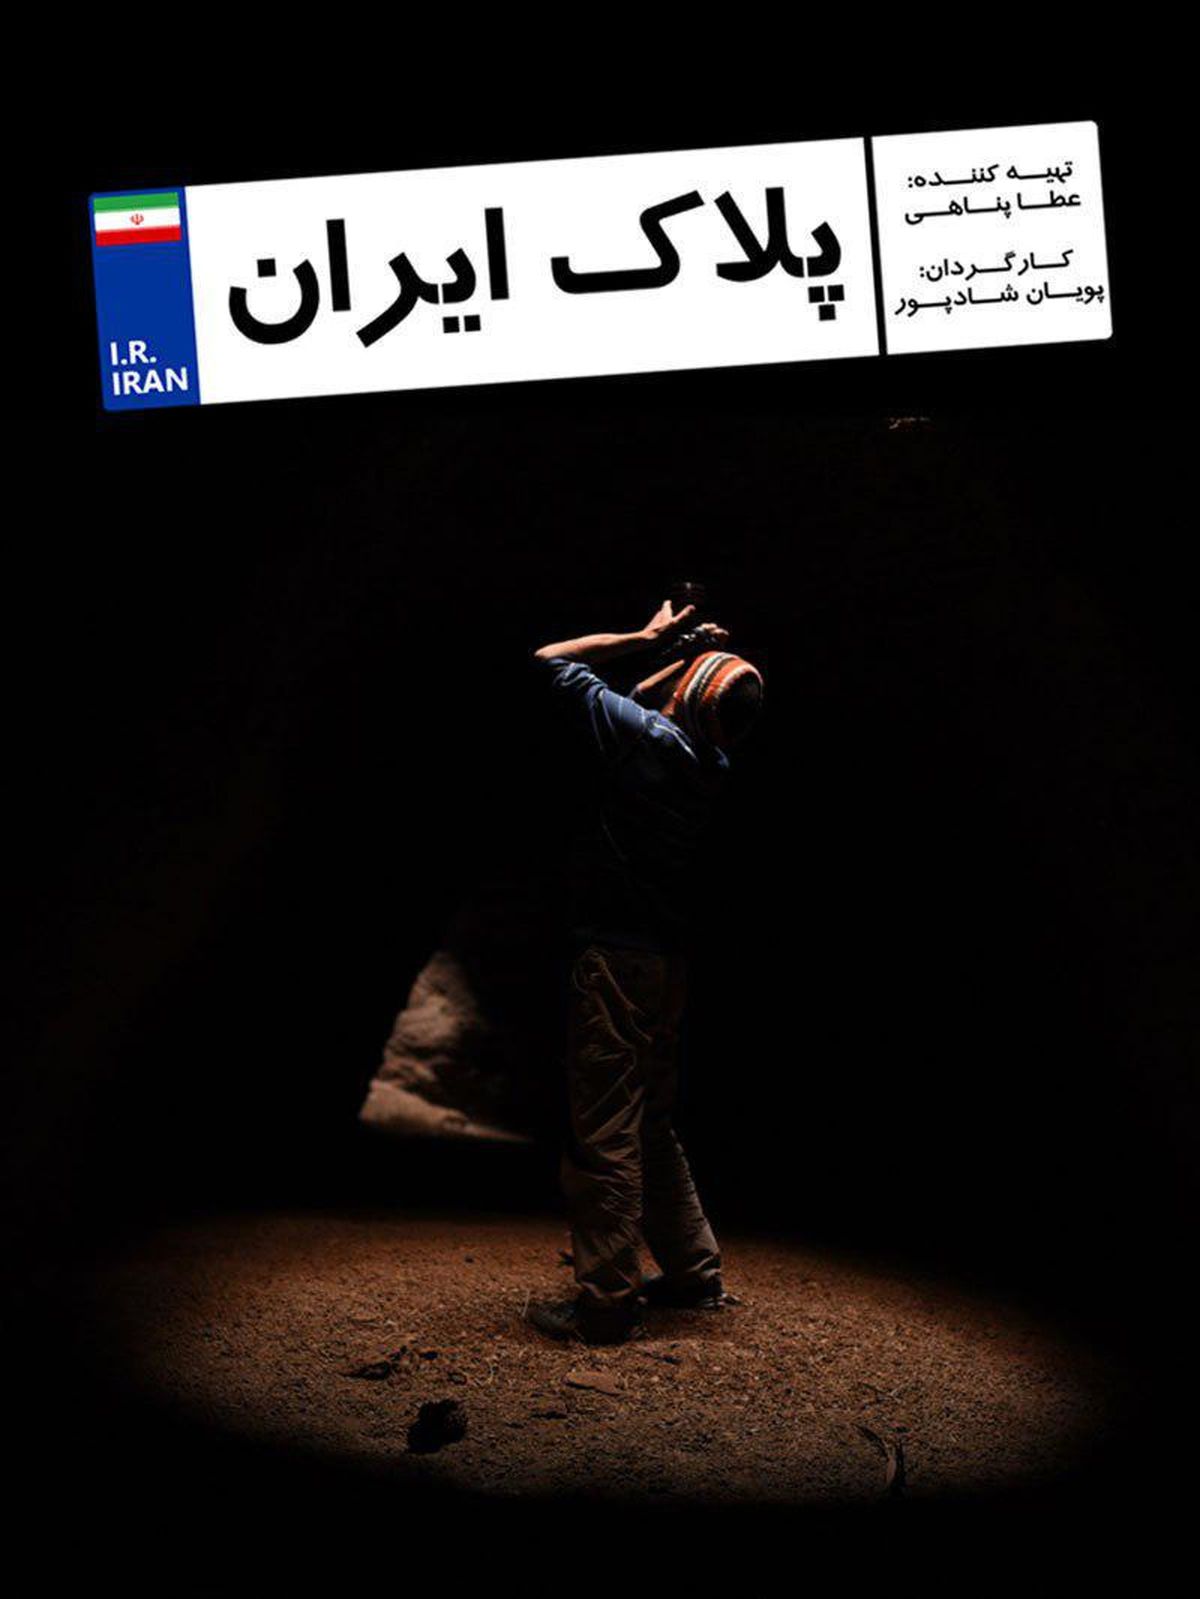 تصاویر ناب از کویر مرکزی تا جنگل های شمال در مستند "پلاک ایران"